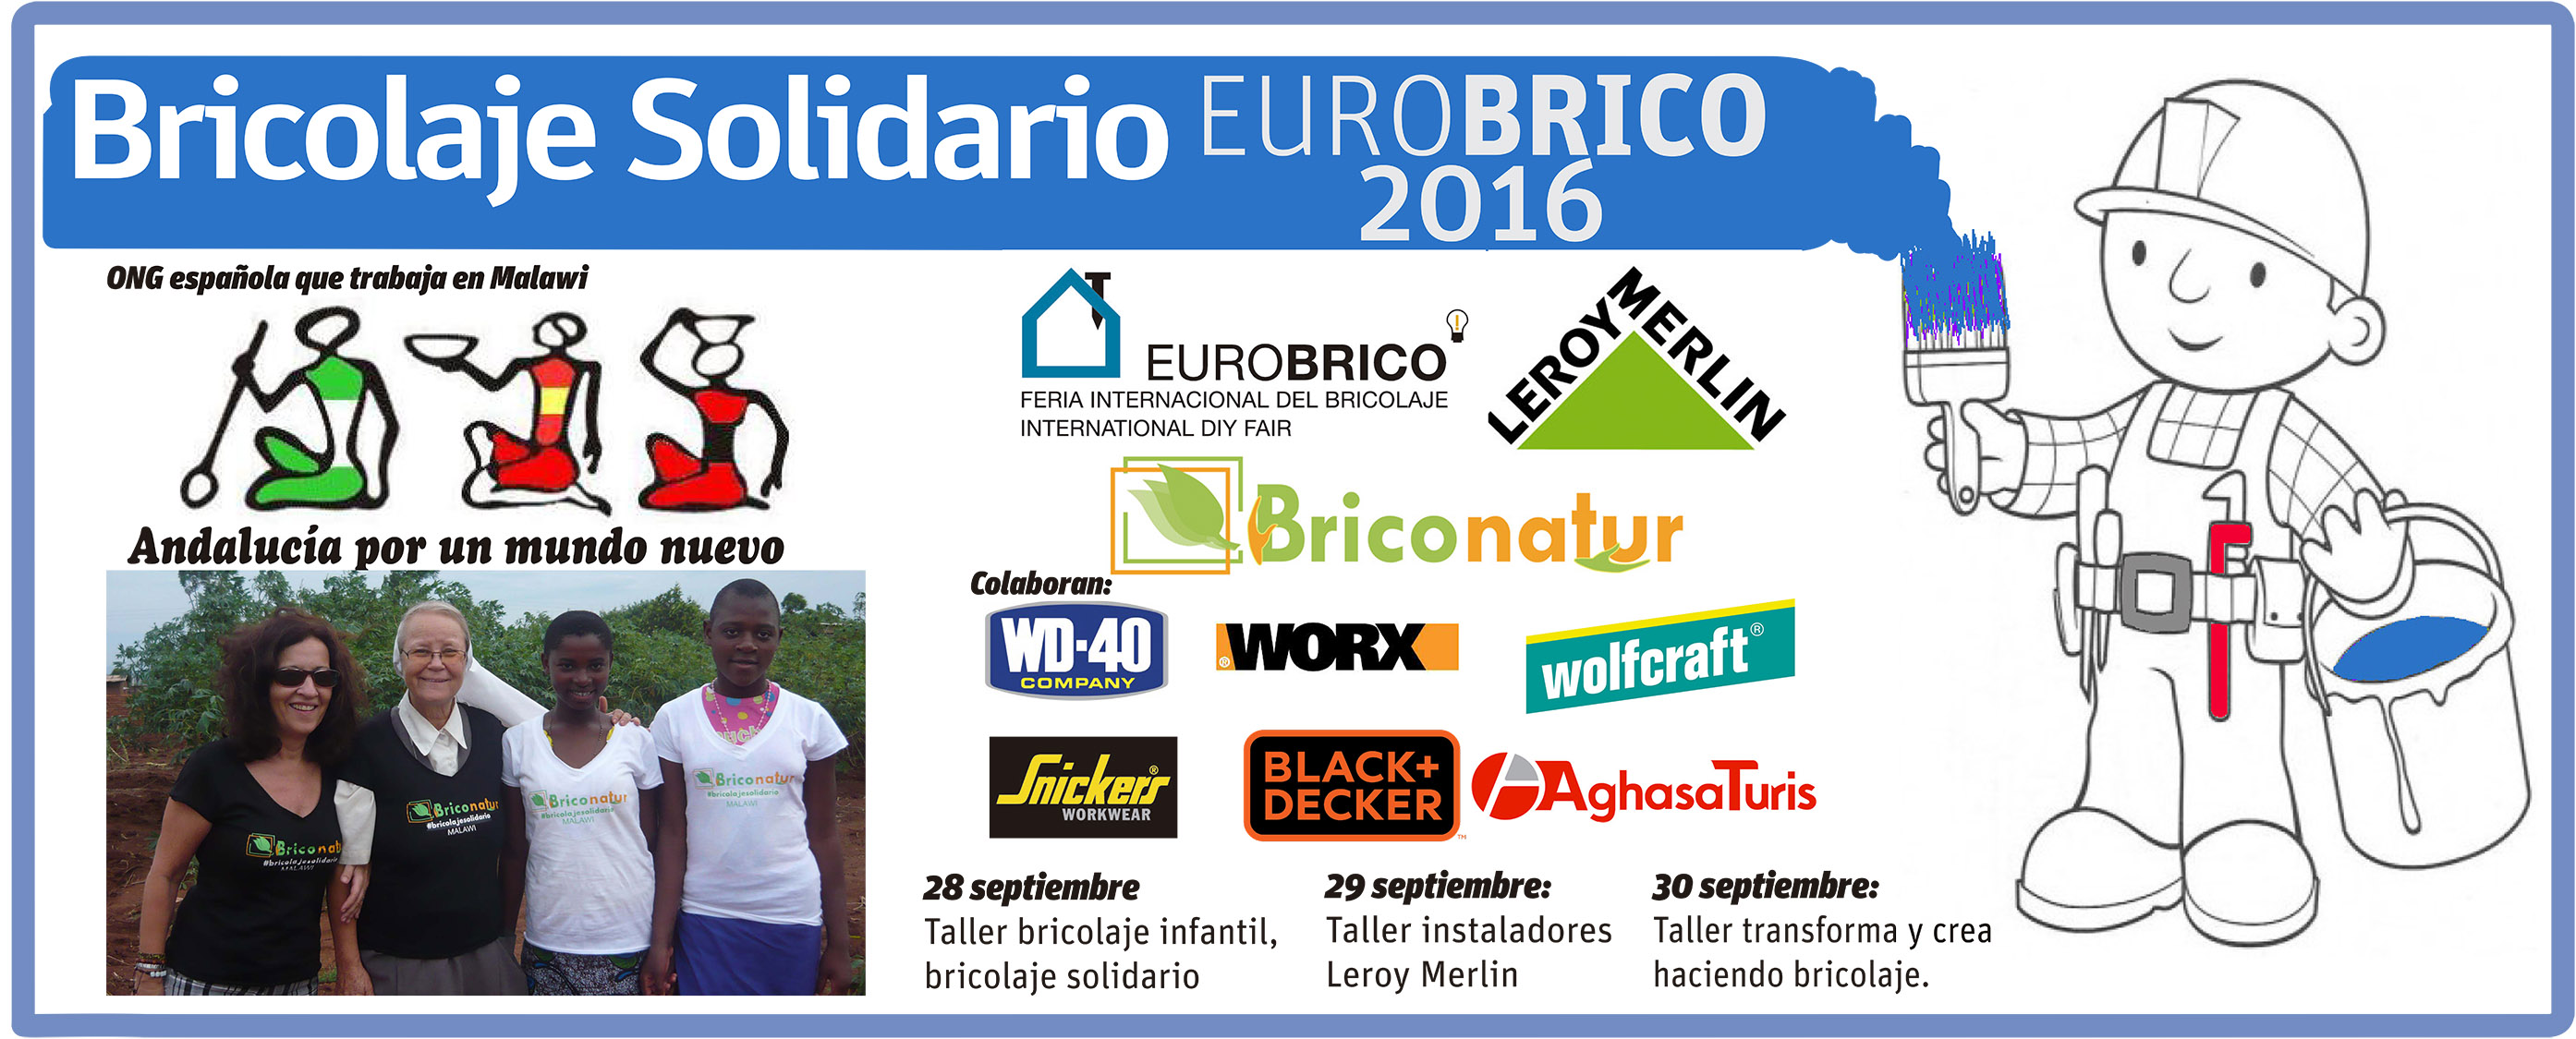 You are currently viewing Bricolaje solidario y talleres para instaladores, dans le programme d’activités de Eurobrico